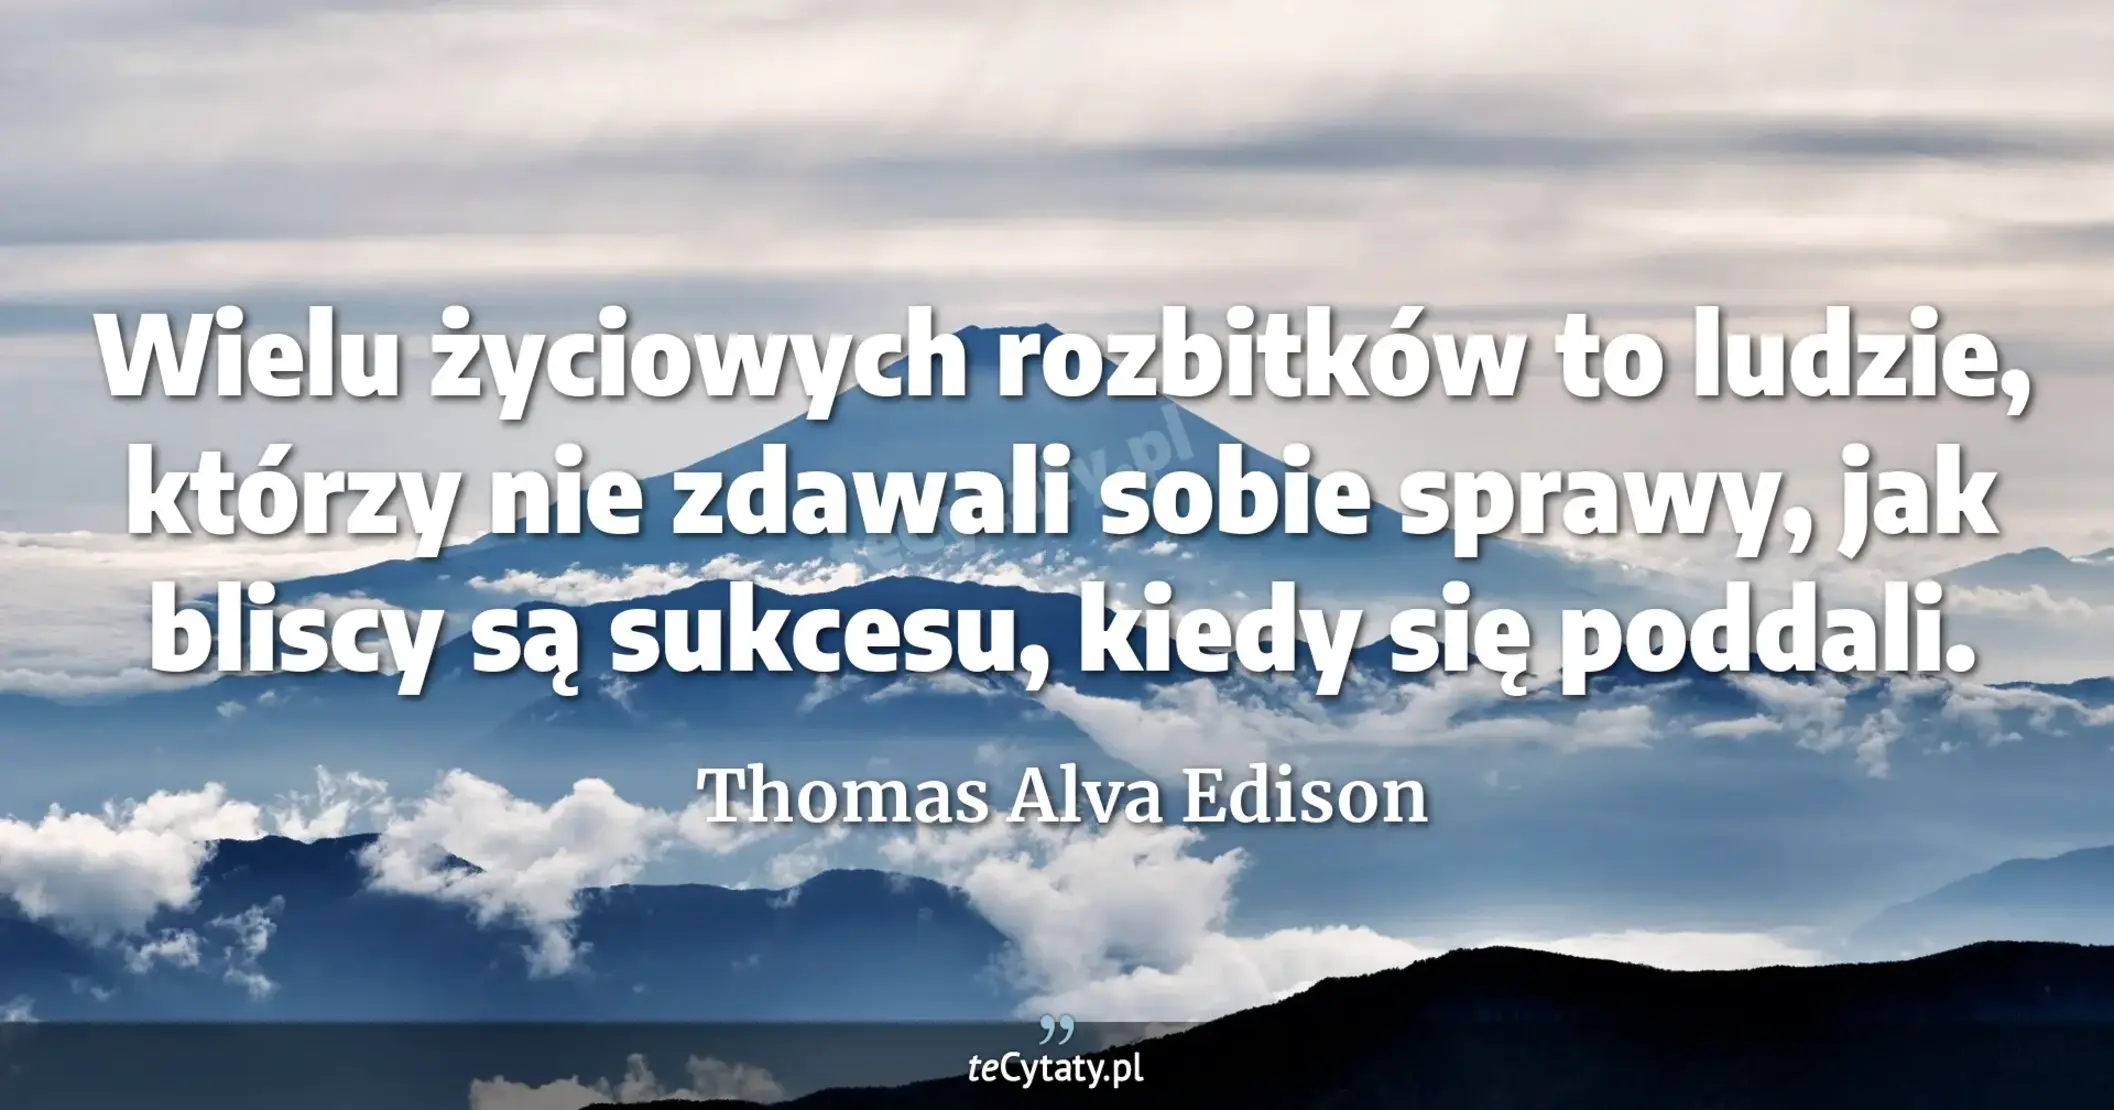 Wielu życiowych rozbitków to ludzie, którzy nie zdawali sobie sprawy, jak bliscy są sukcesu, kiedy się poddali. - Thomas Alva Edison